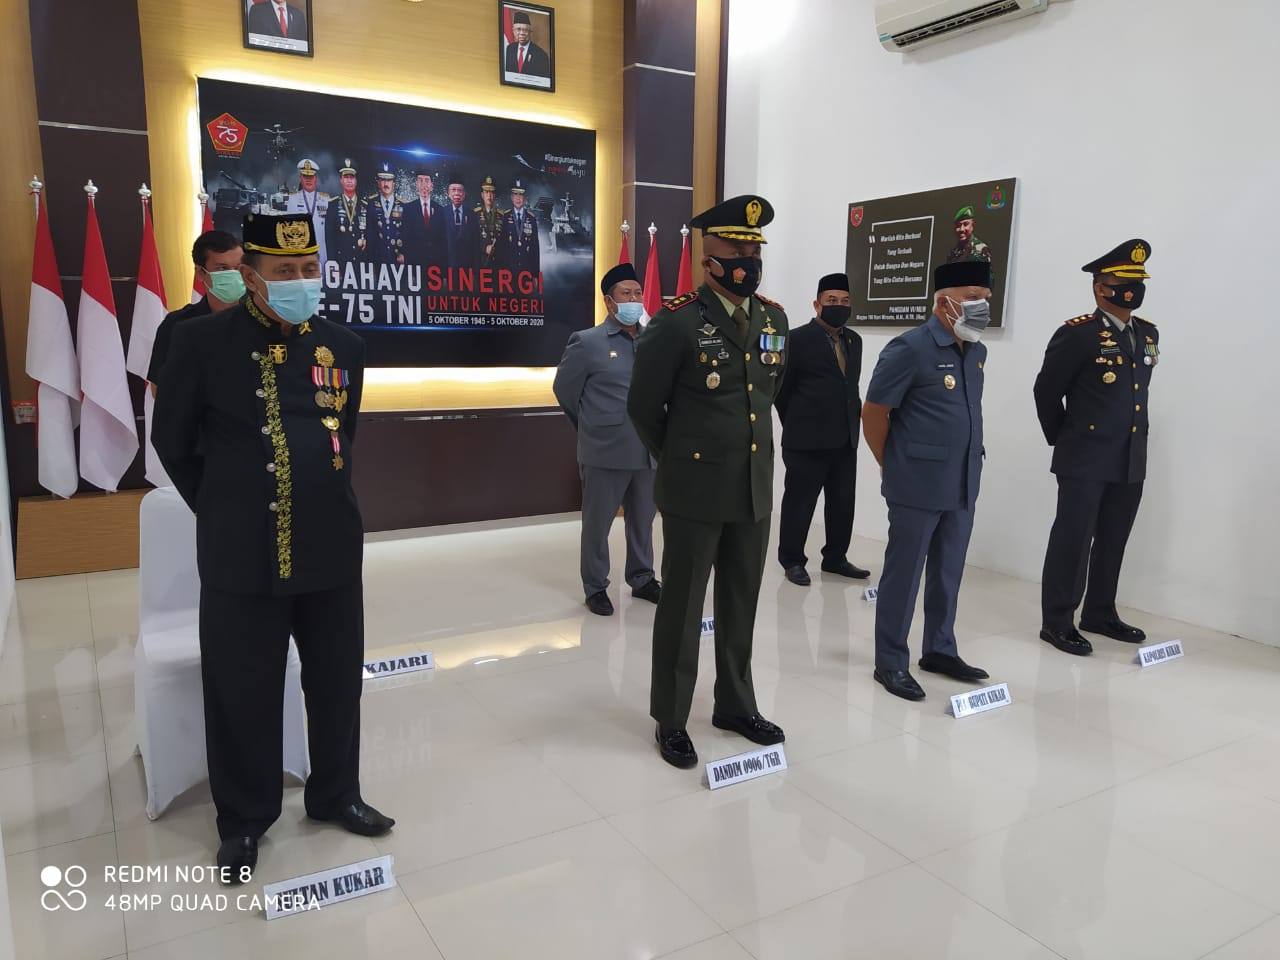 Apel HUT ke-75 TNI Digelar Secara Sederhana, Charles Alling Sebut Tetap Berjalan Khidmat